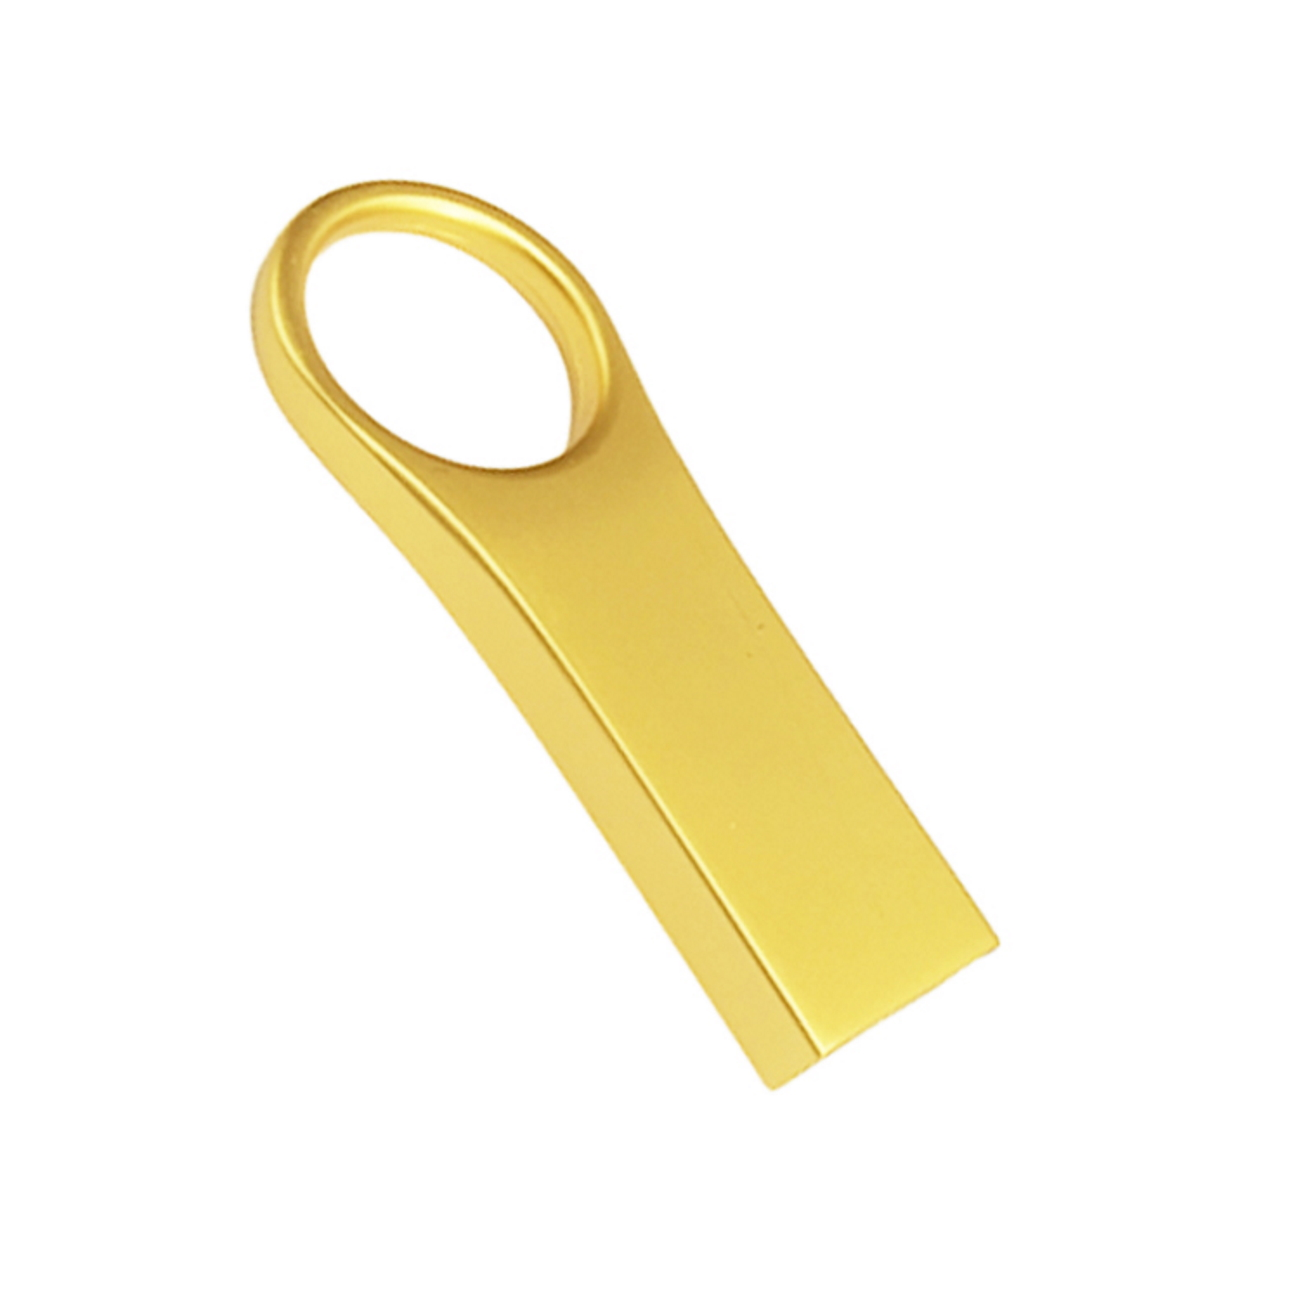 GB) 8 U66 Metall ® GERMANY USB (Gold, USB-Stick